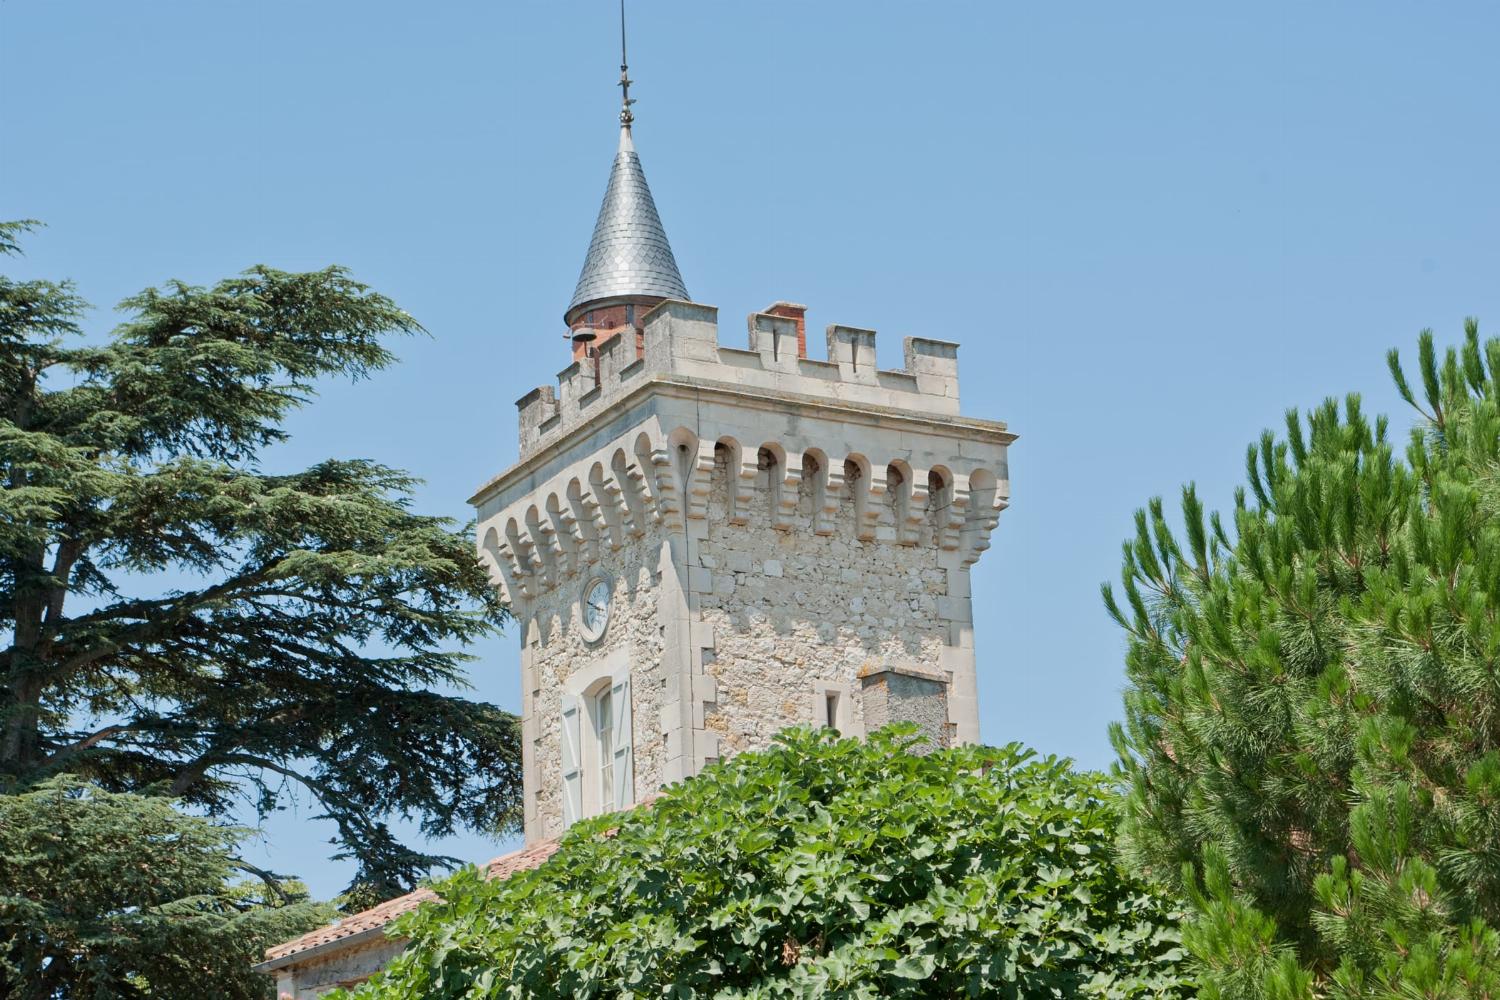 Château de vacances dans le Gers